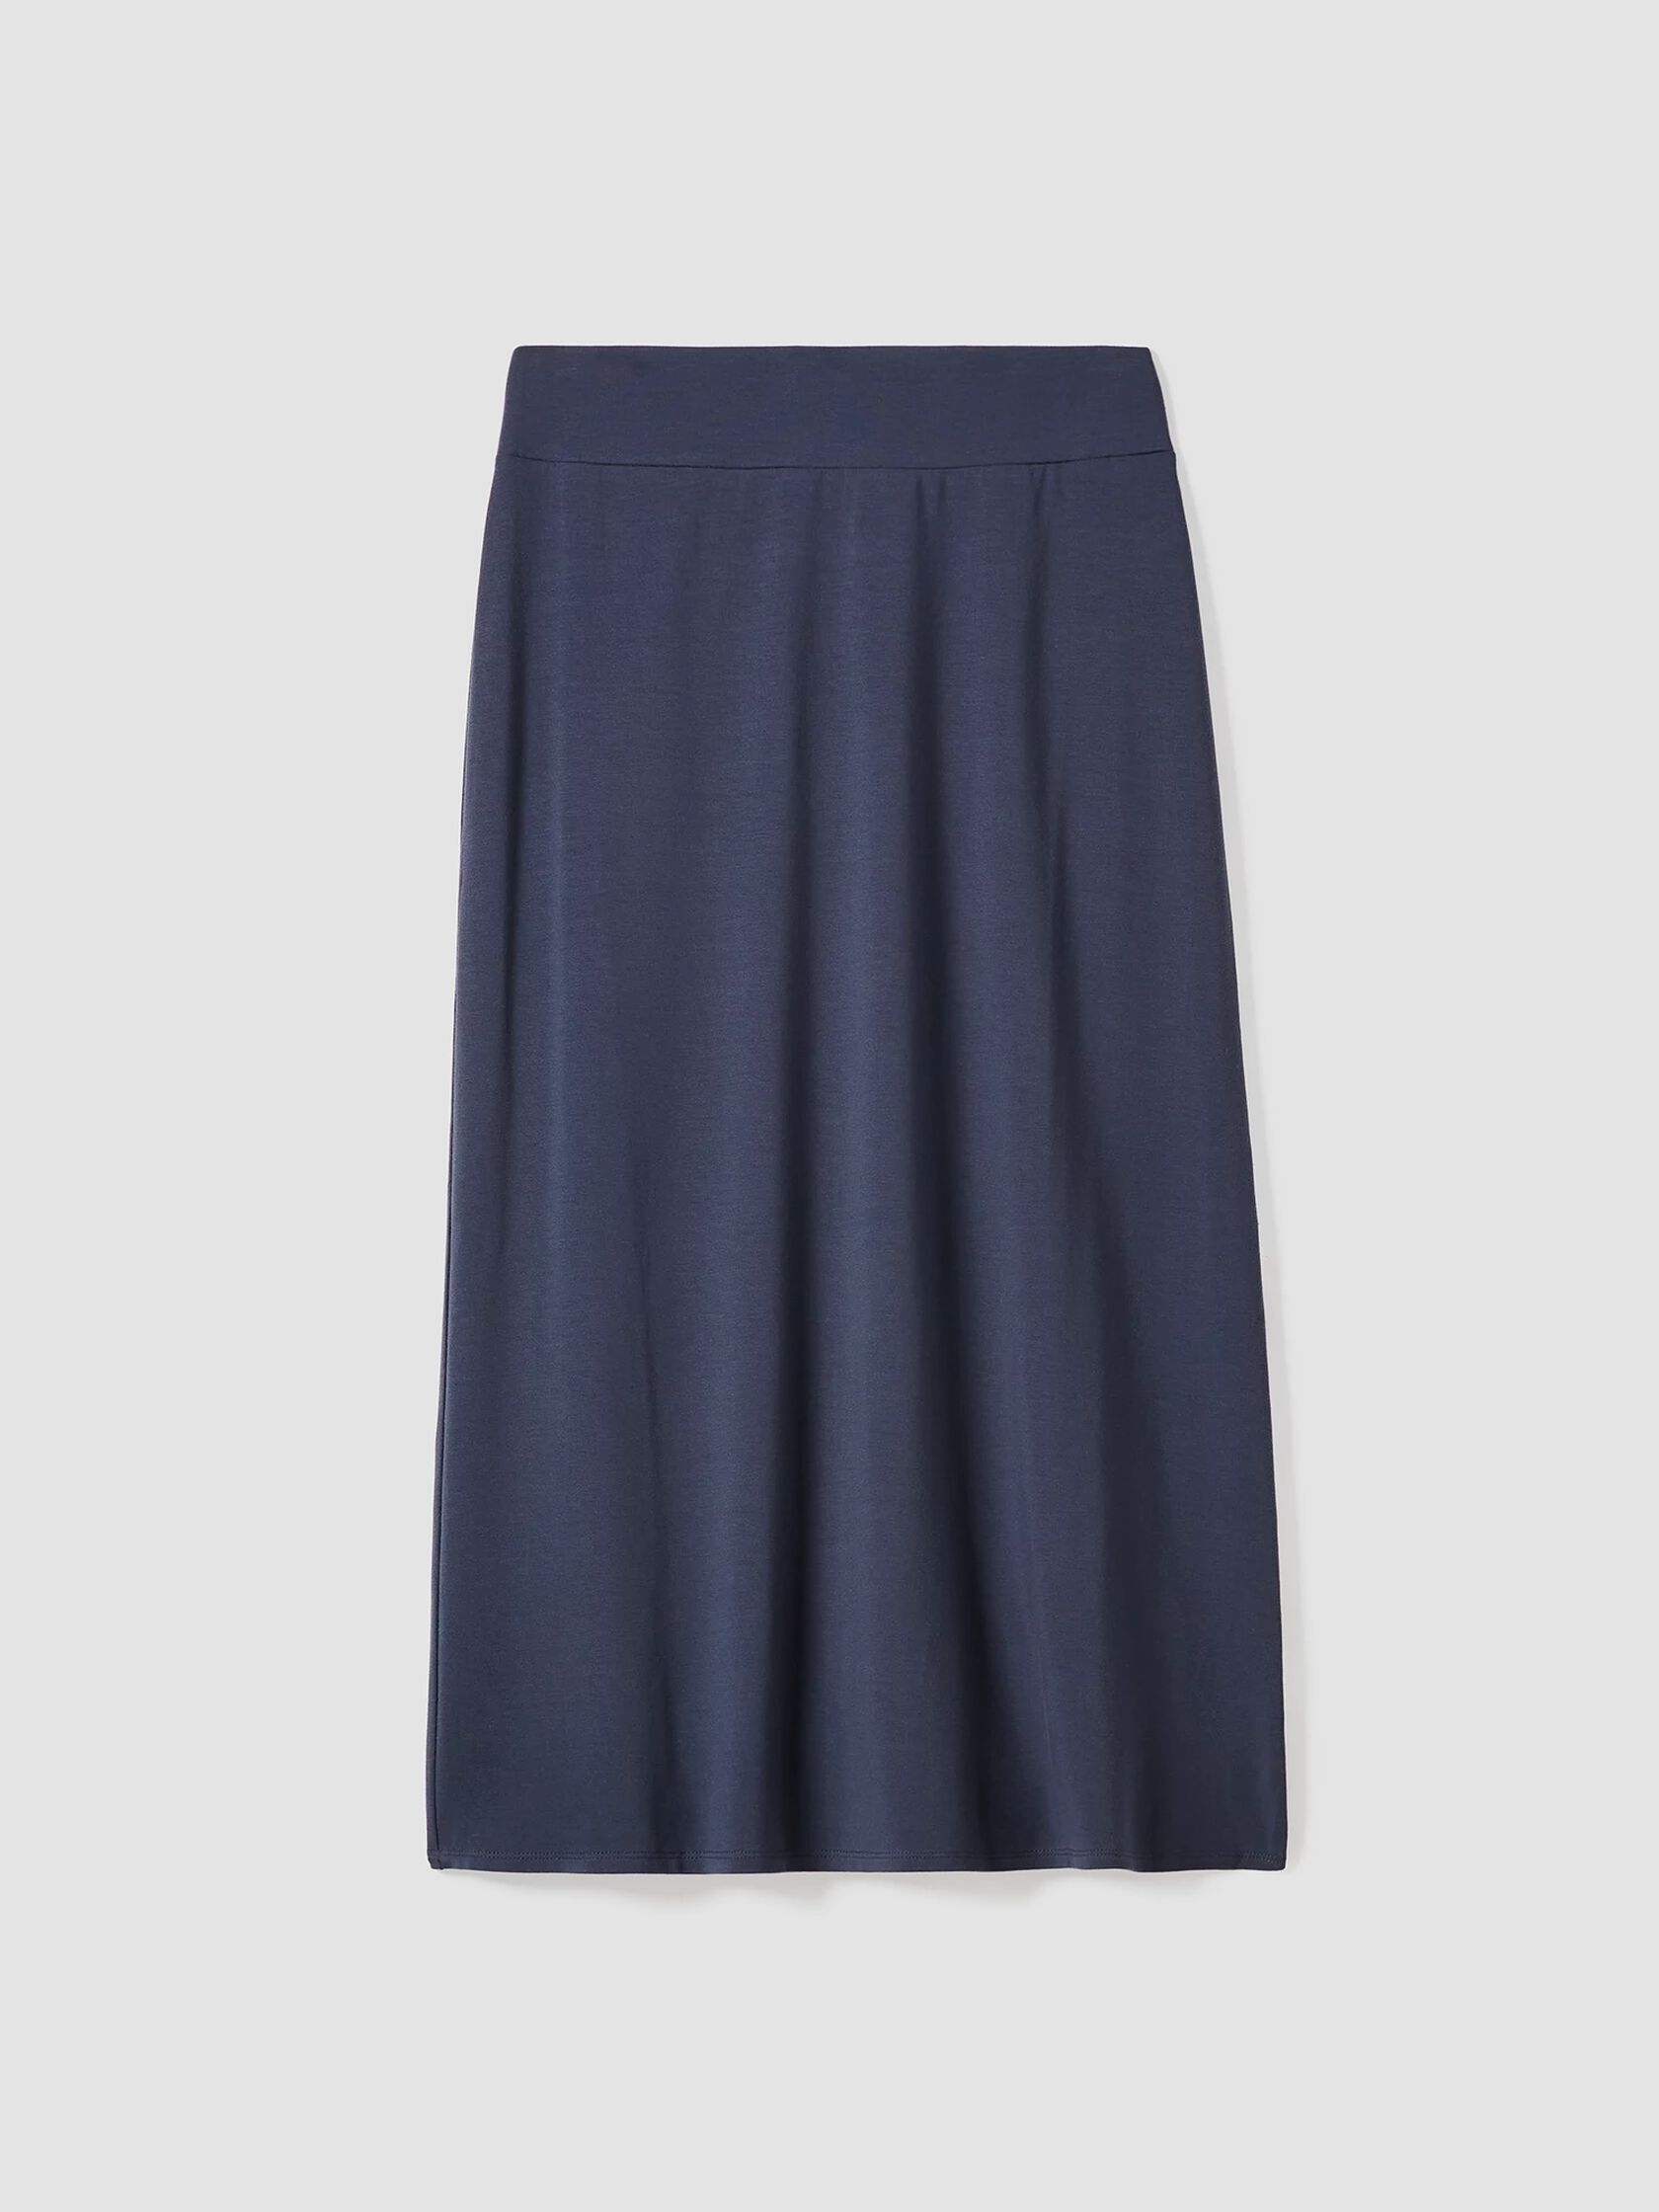 Stretch Jersey Knit A-Line Skirt